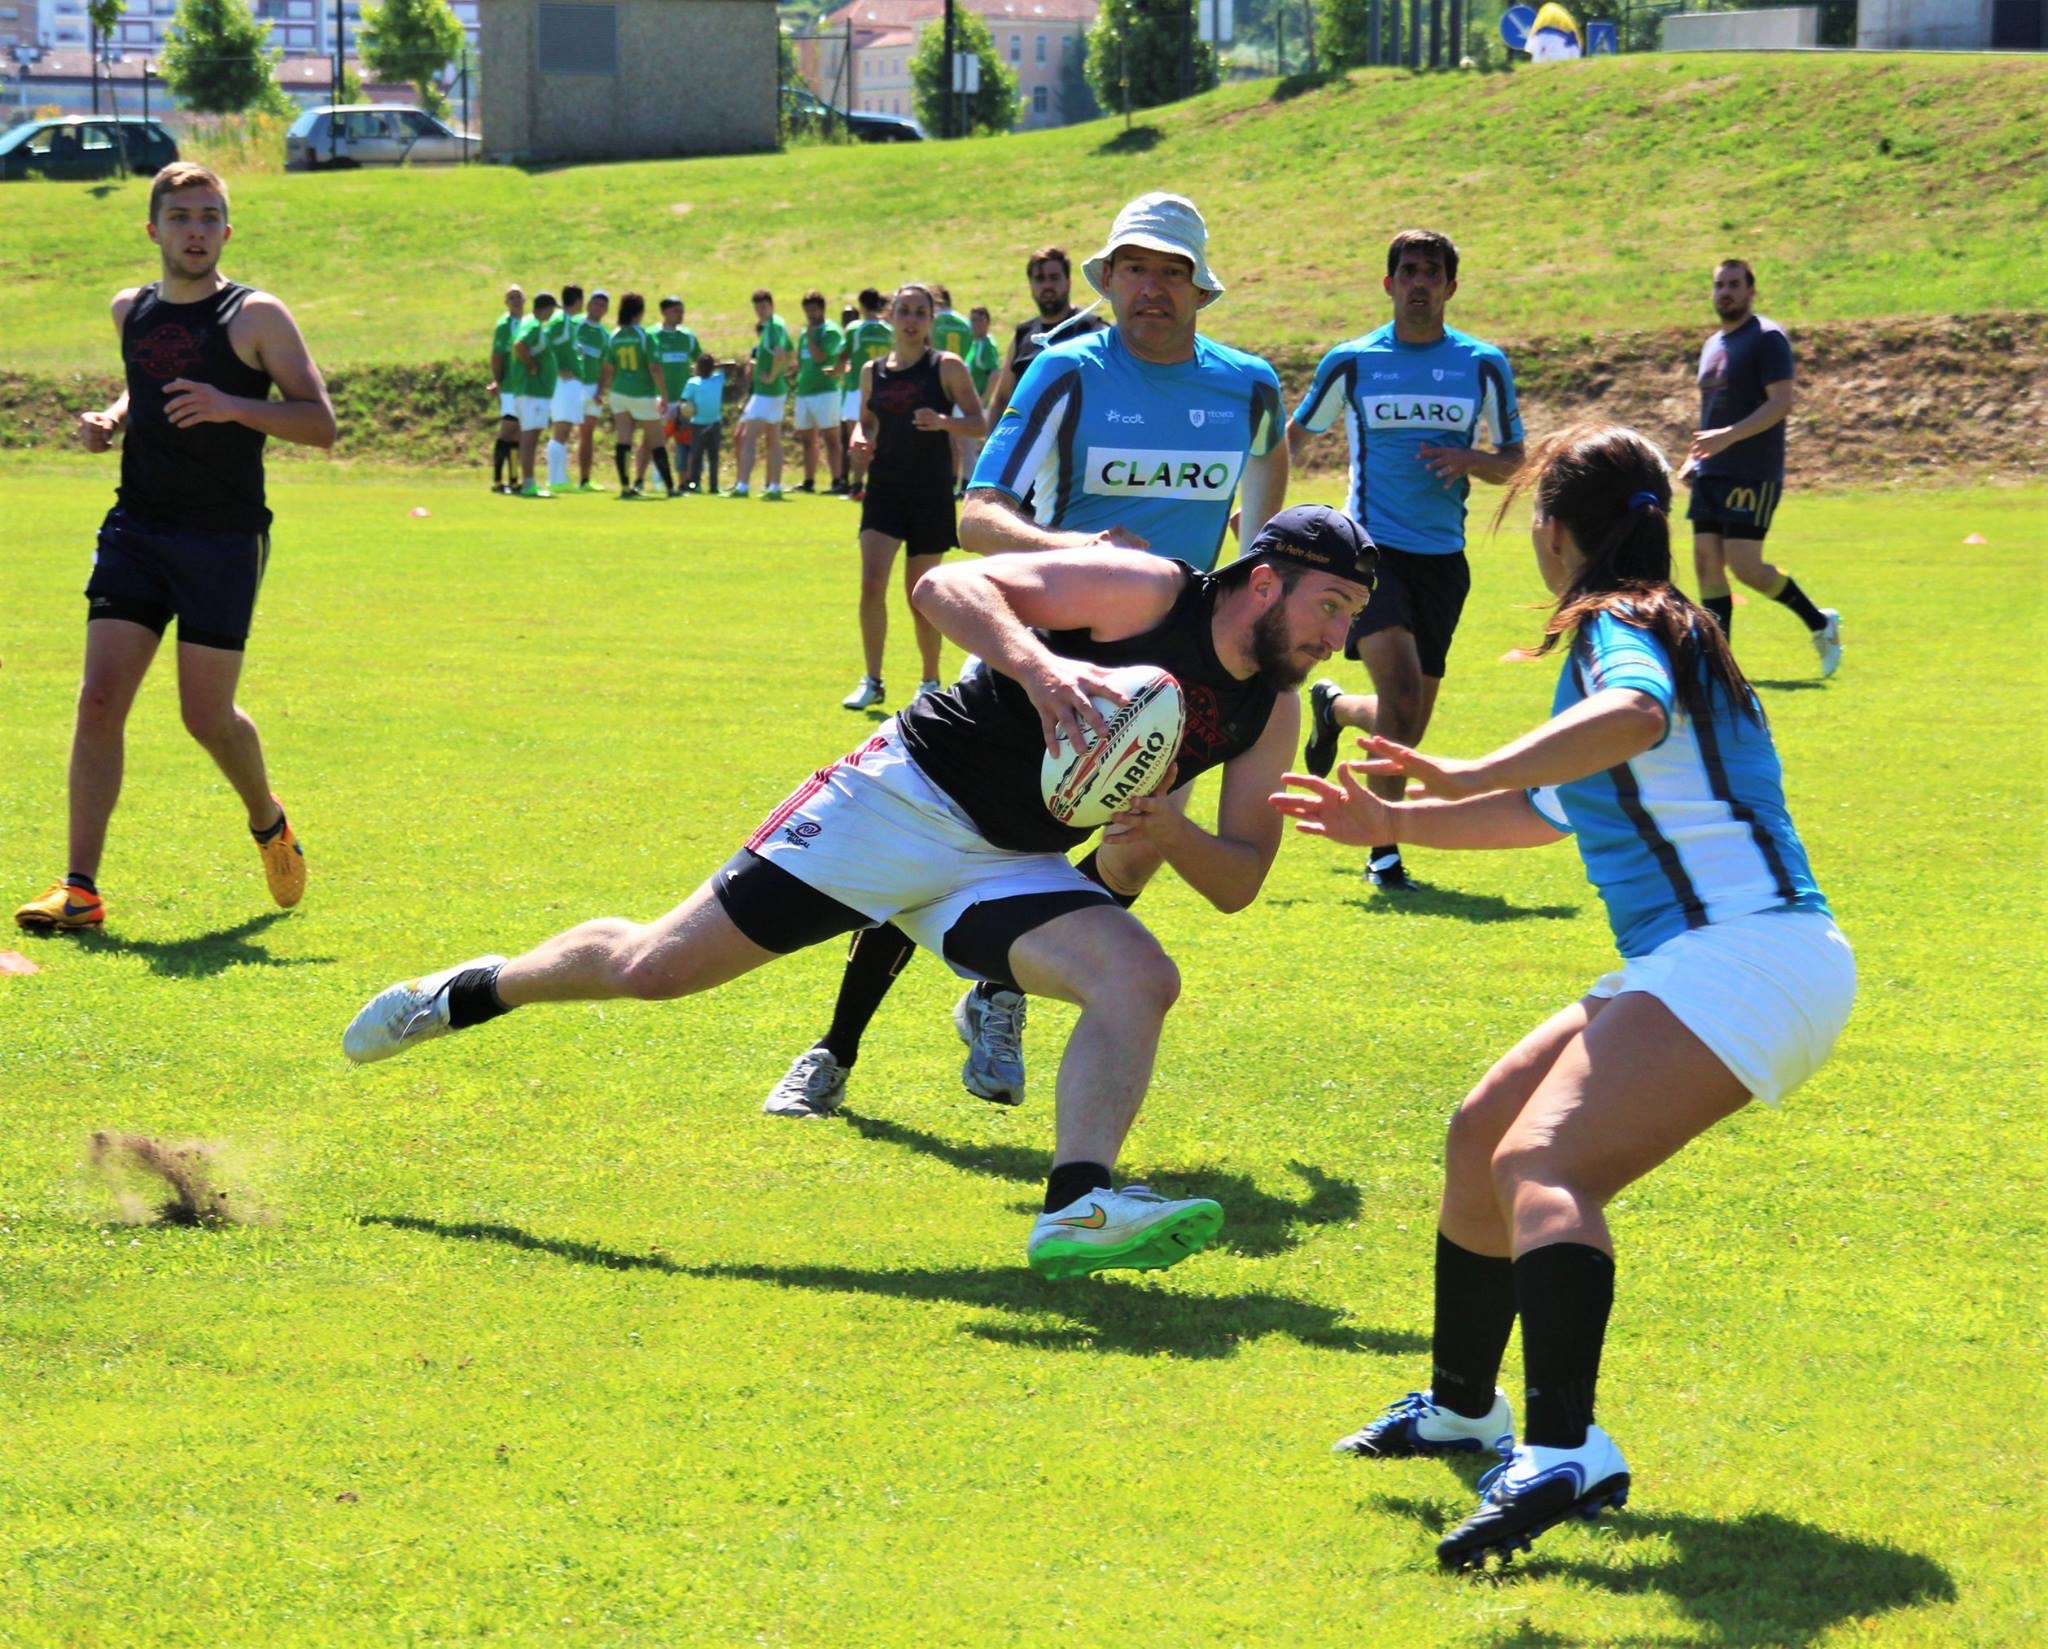 Maior torneio de rugby de Portugal regressa aos Arcos de Valdevez